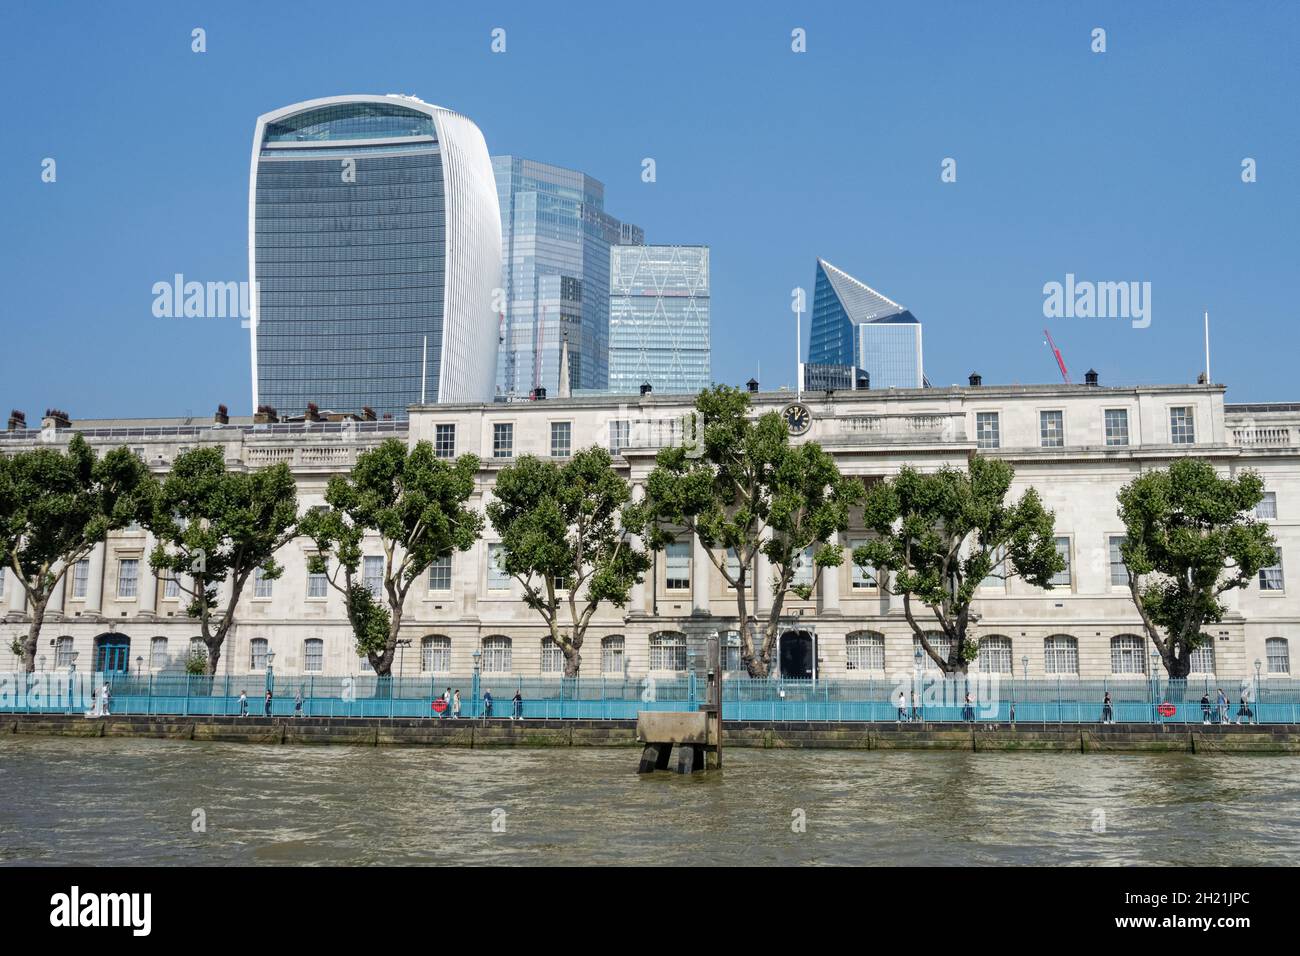 The Custom House, HM Revenue & Customs Office mit Wolkenkratzern in der City of London von der Themse aus gesehen, England Großbritannien Stockfoto